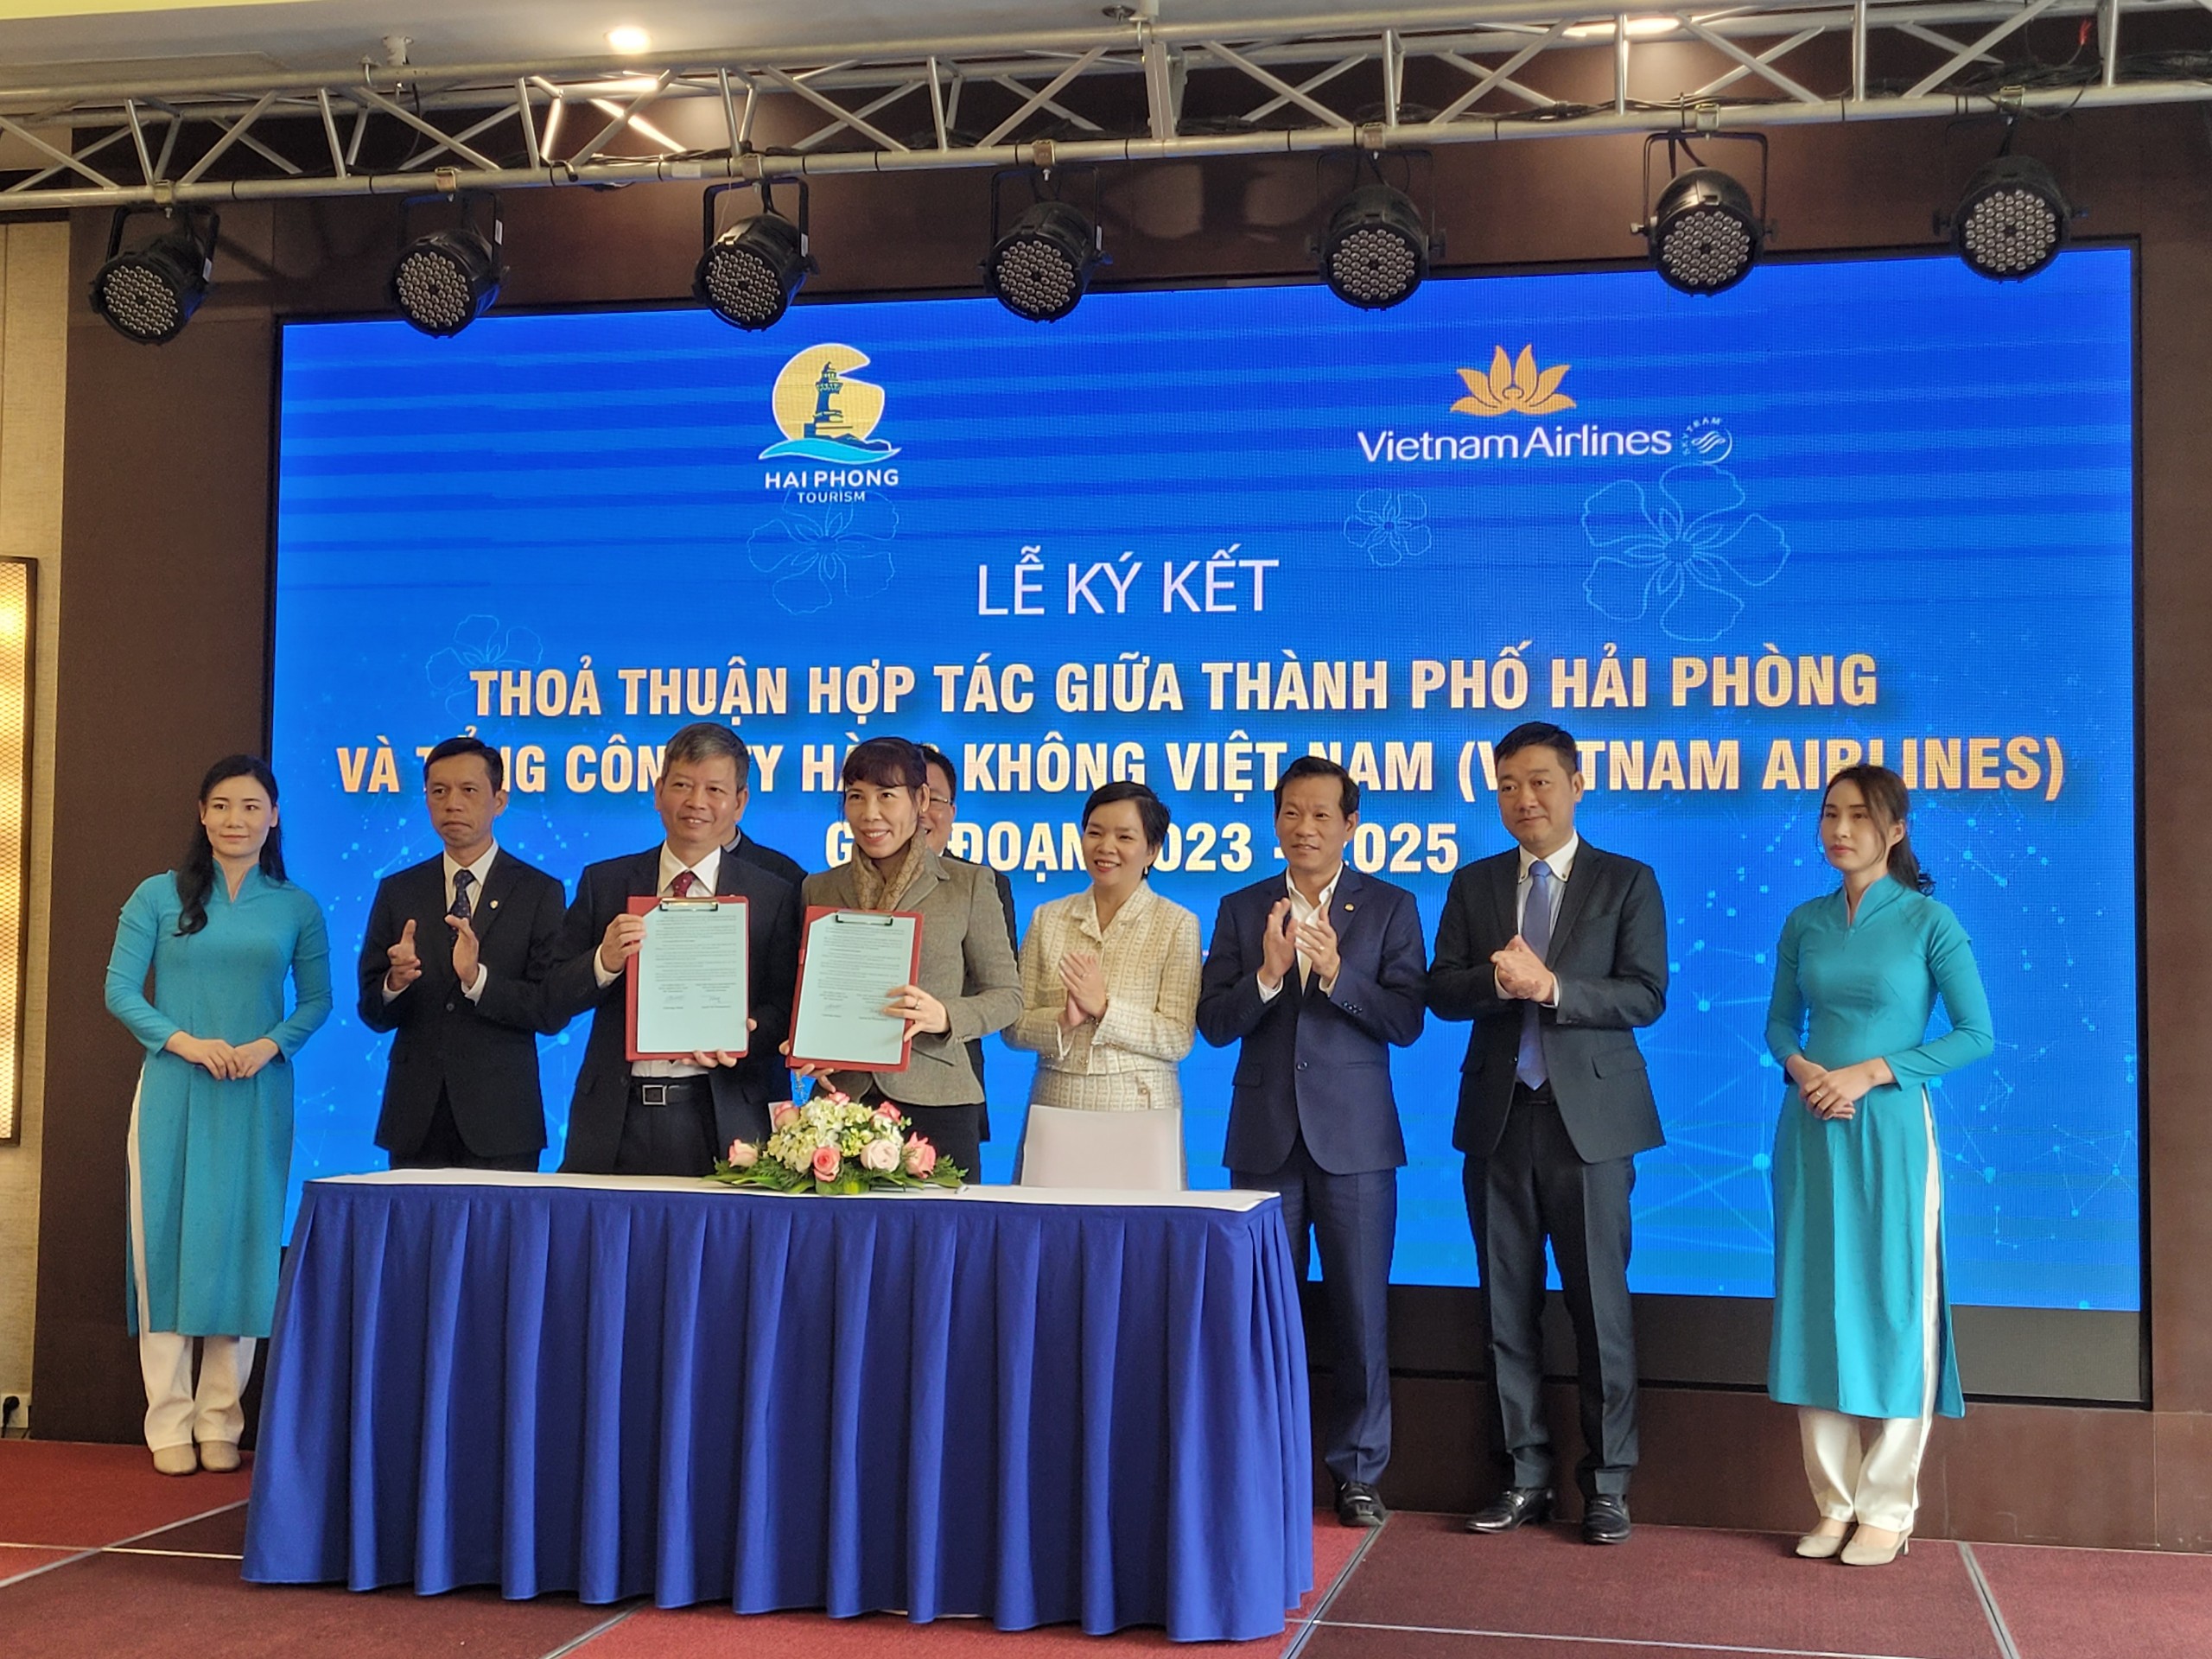 Lễ ký kết thỏa thuận hợp tác giữa Thành phố Hải Phòng với Tổng Công ty Hàng không Việt Nam giai đoạn 2023 - 2025